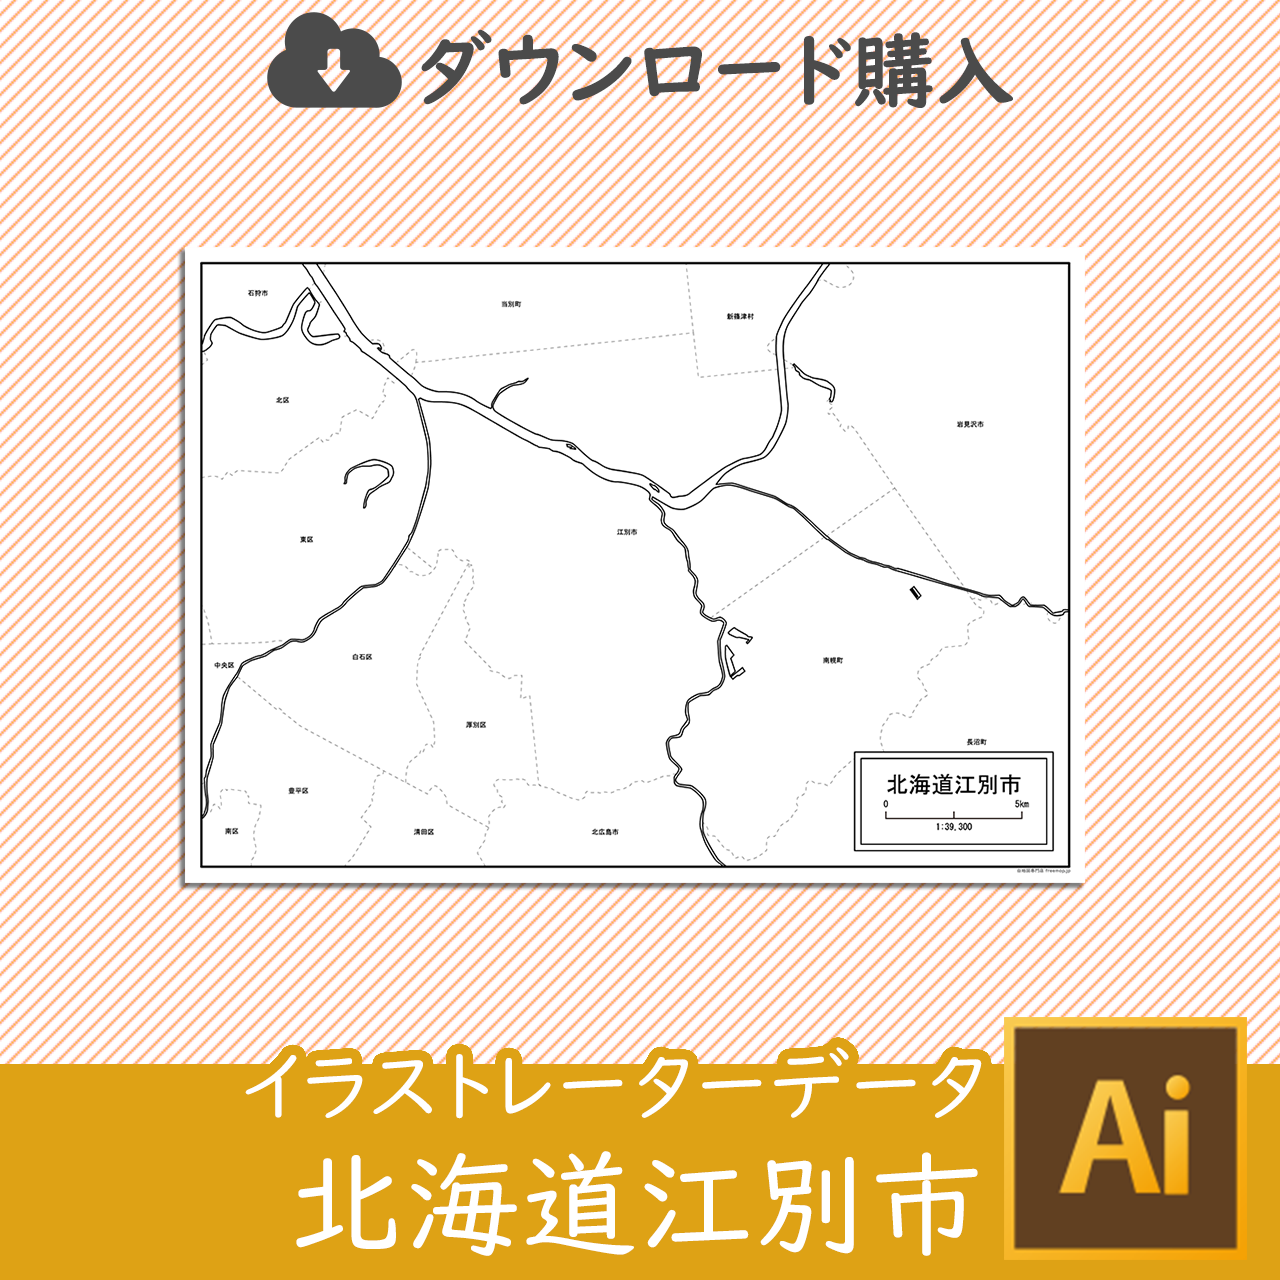 江別市のaiデータのサムネイル画像